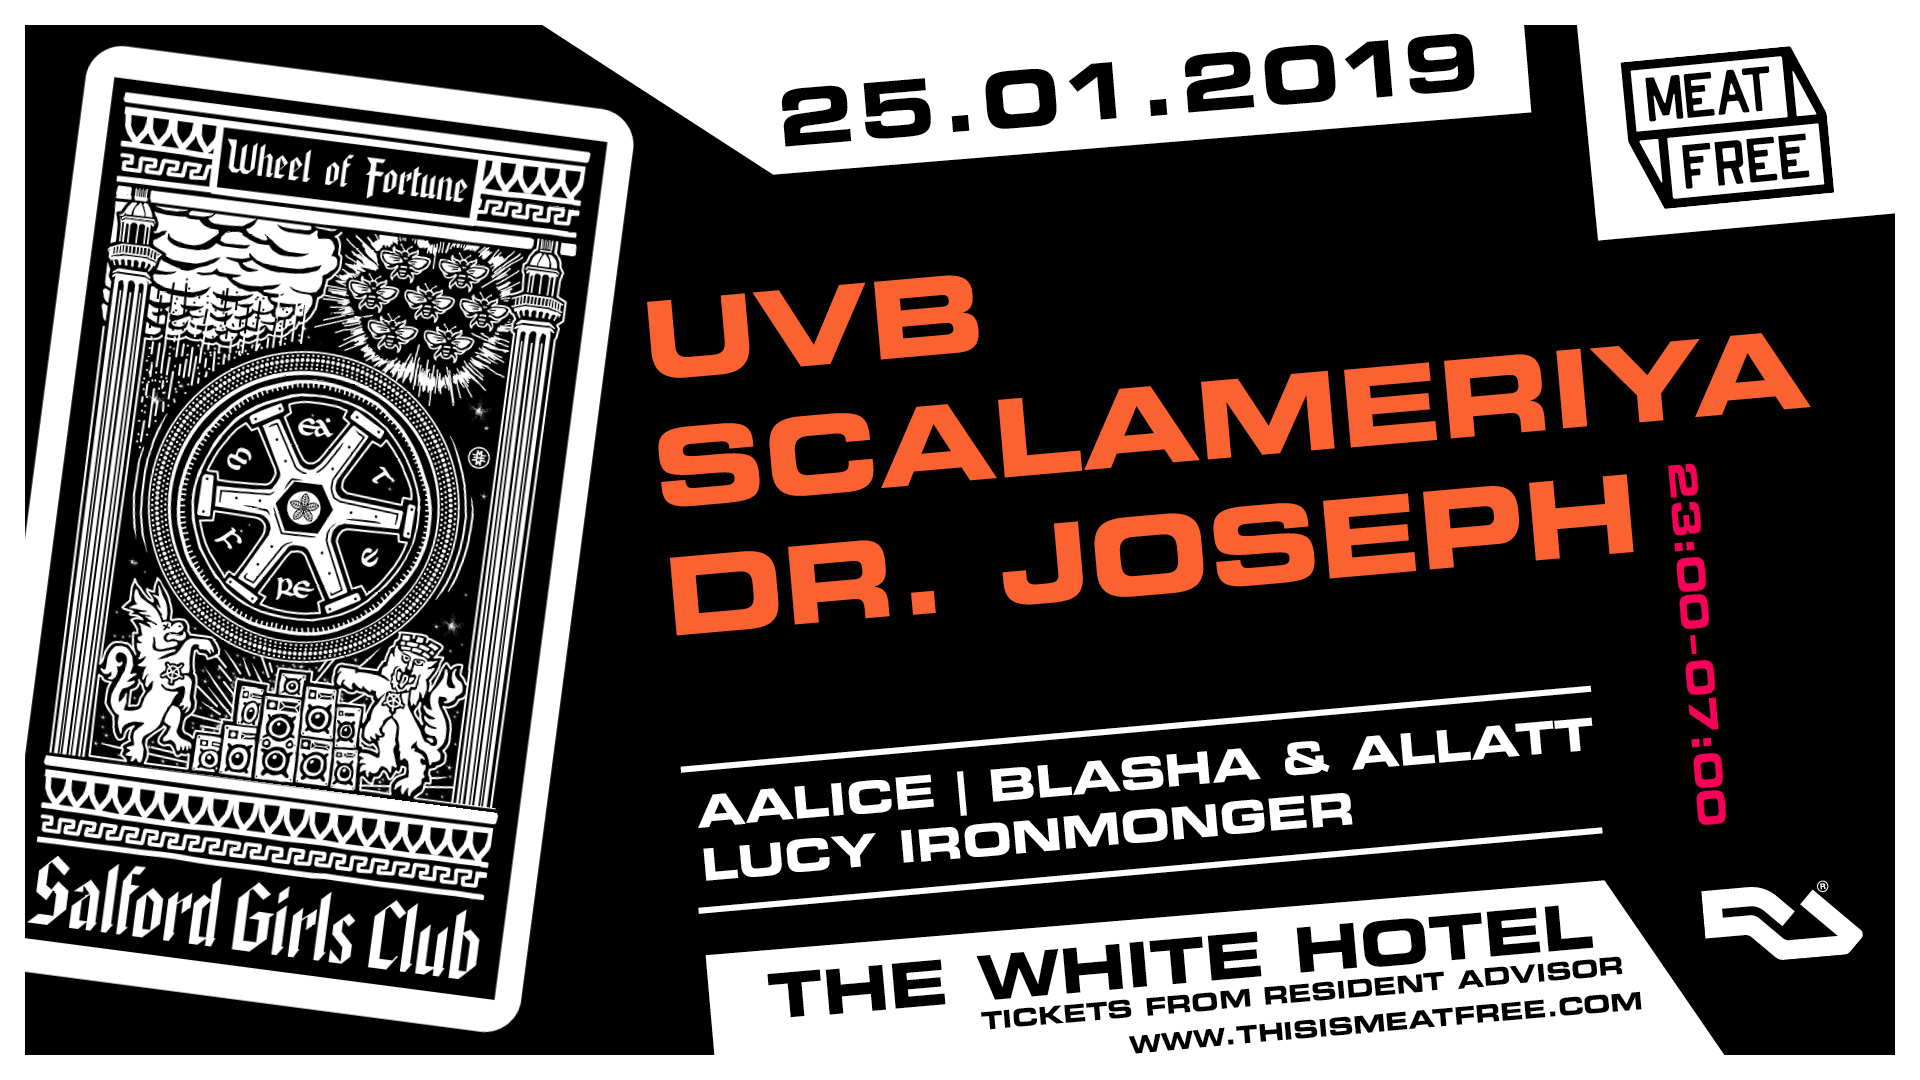 25.01.19: UVB, Scalameriya & Dr Joseph